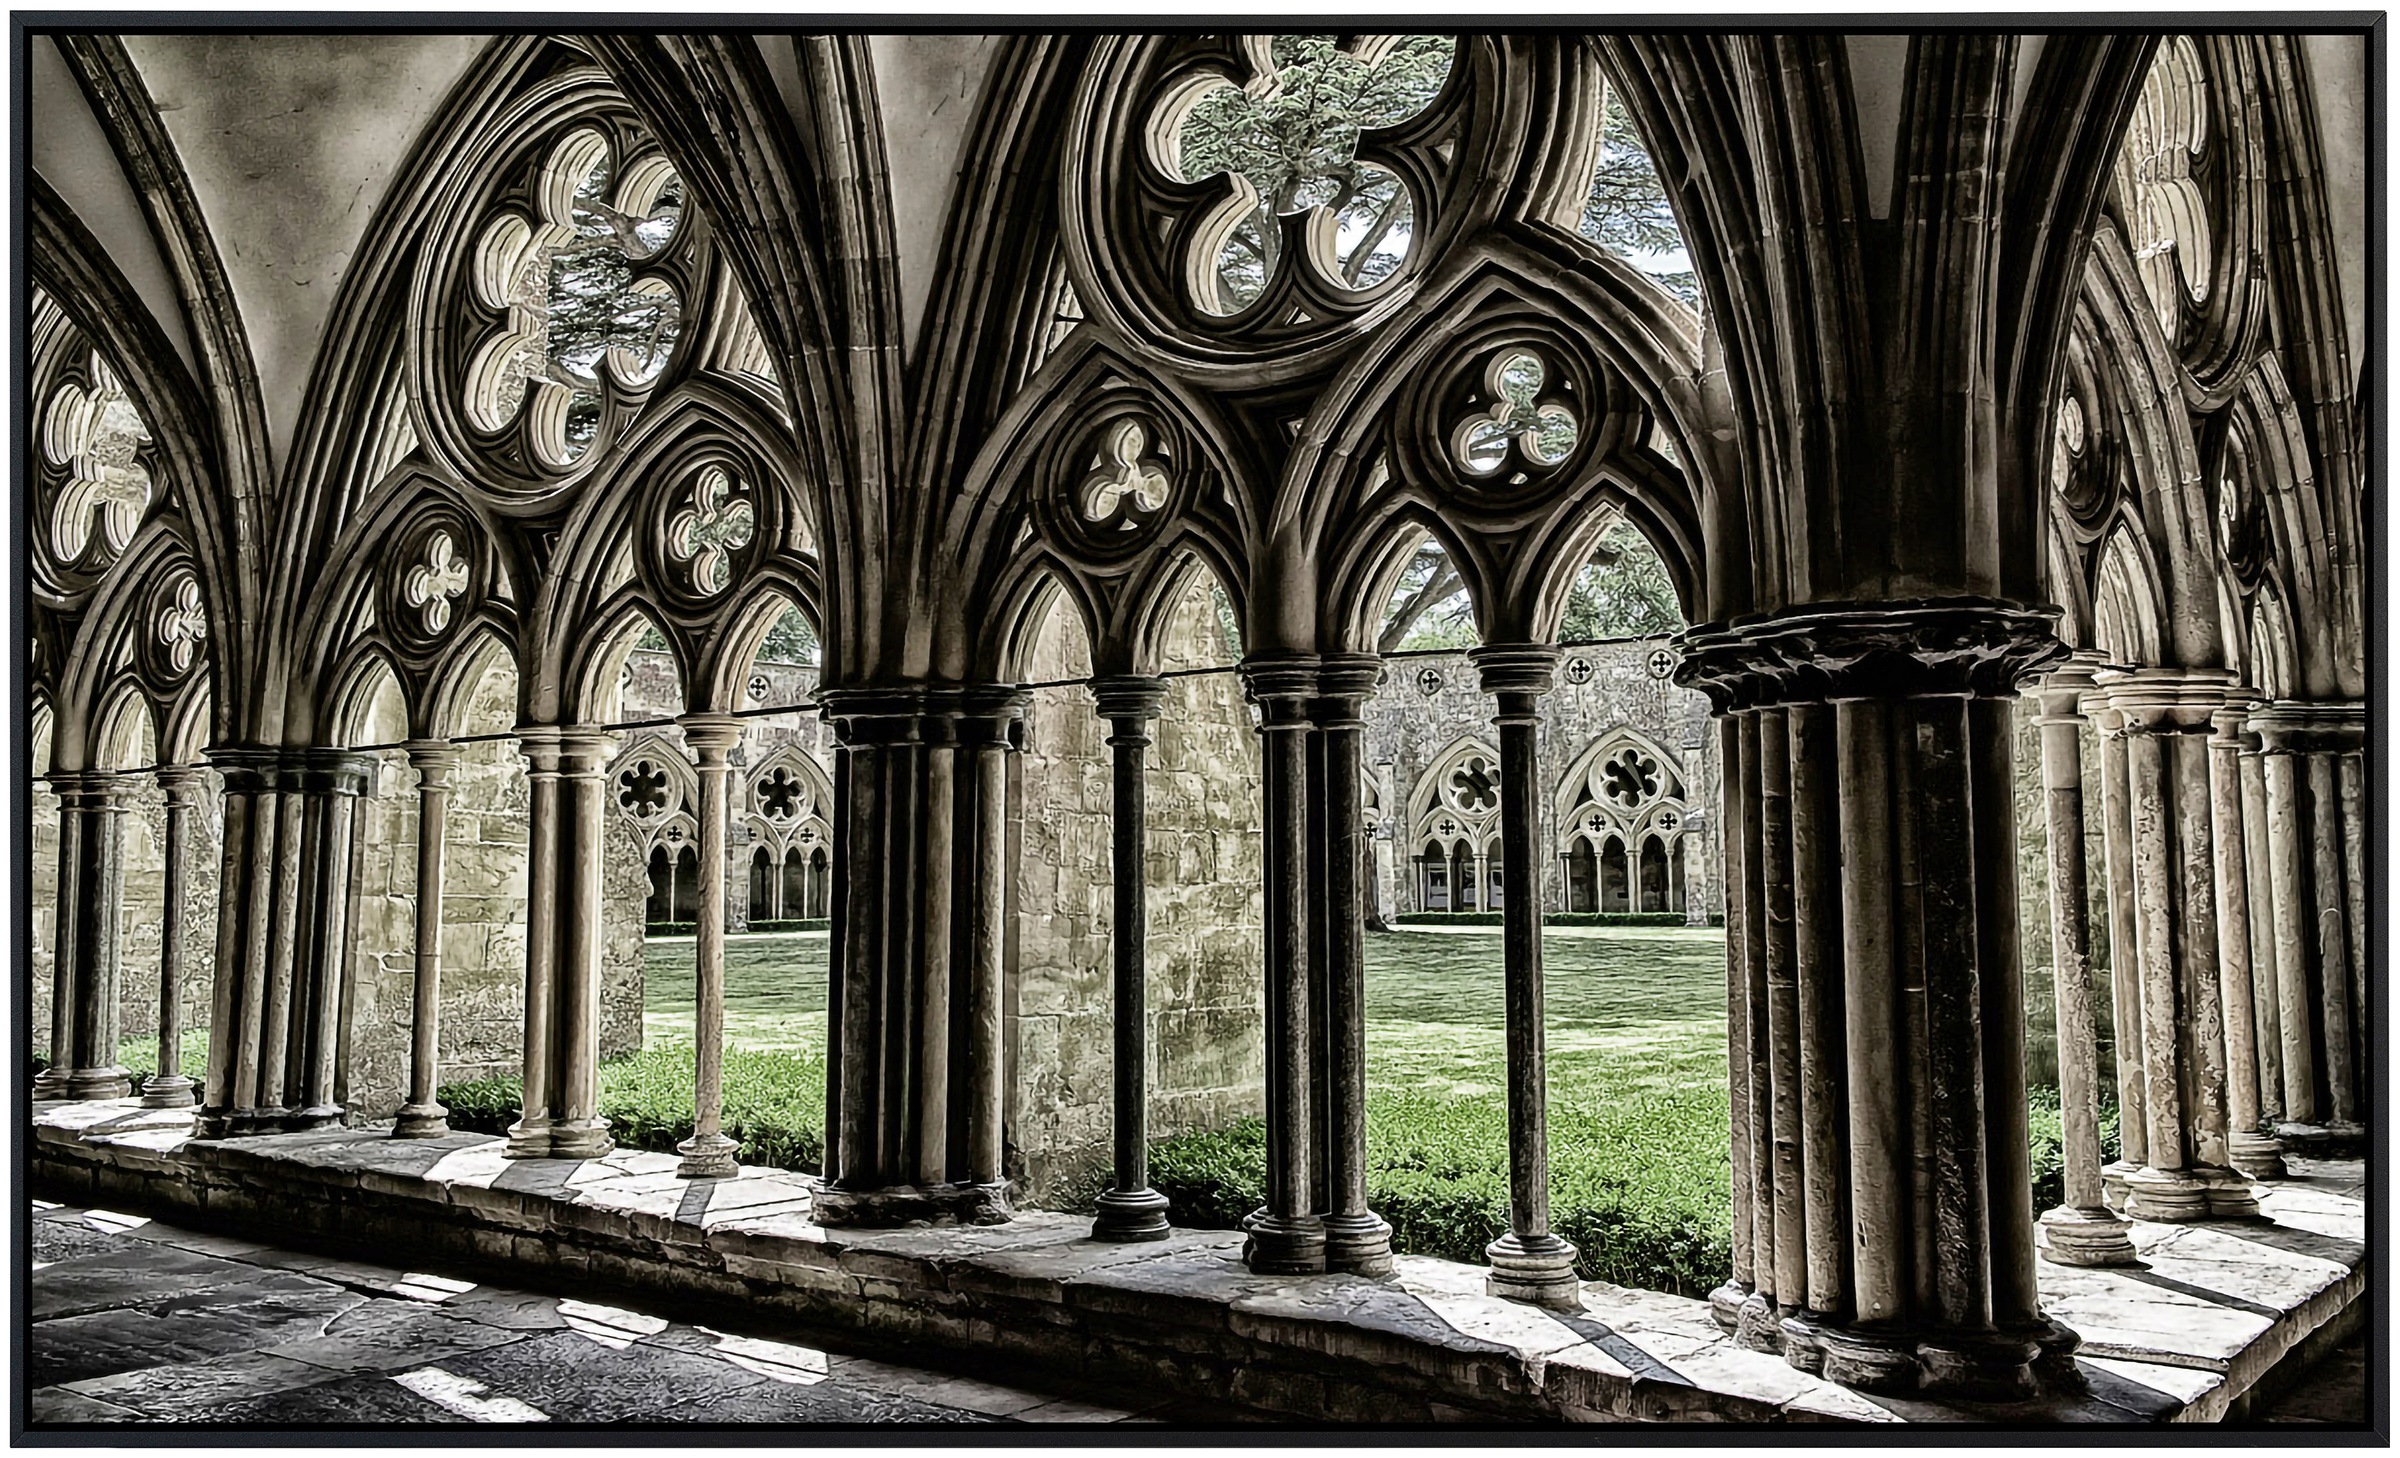 Papermoon Infrarotheizung »Mittelalterliche Kathedrale«, sehr angenehme Str günstig online kaufen